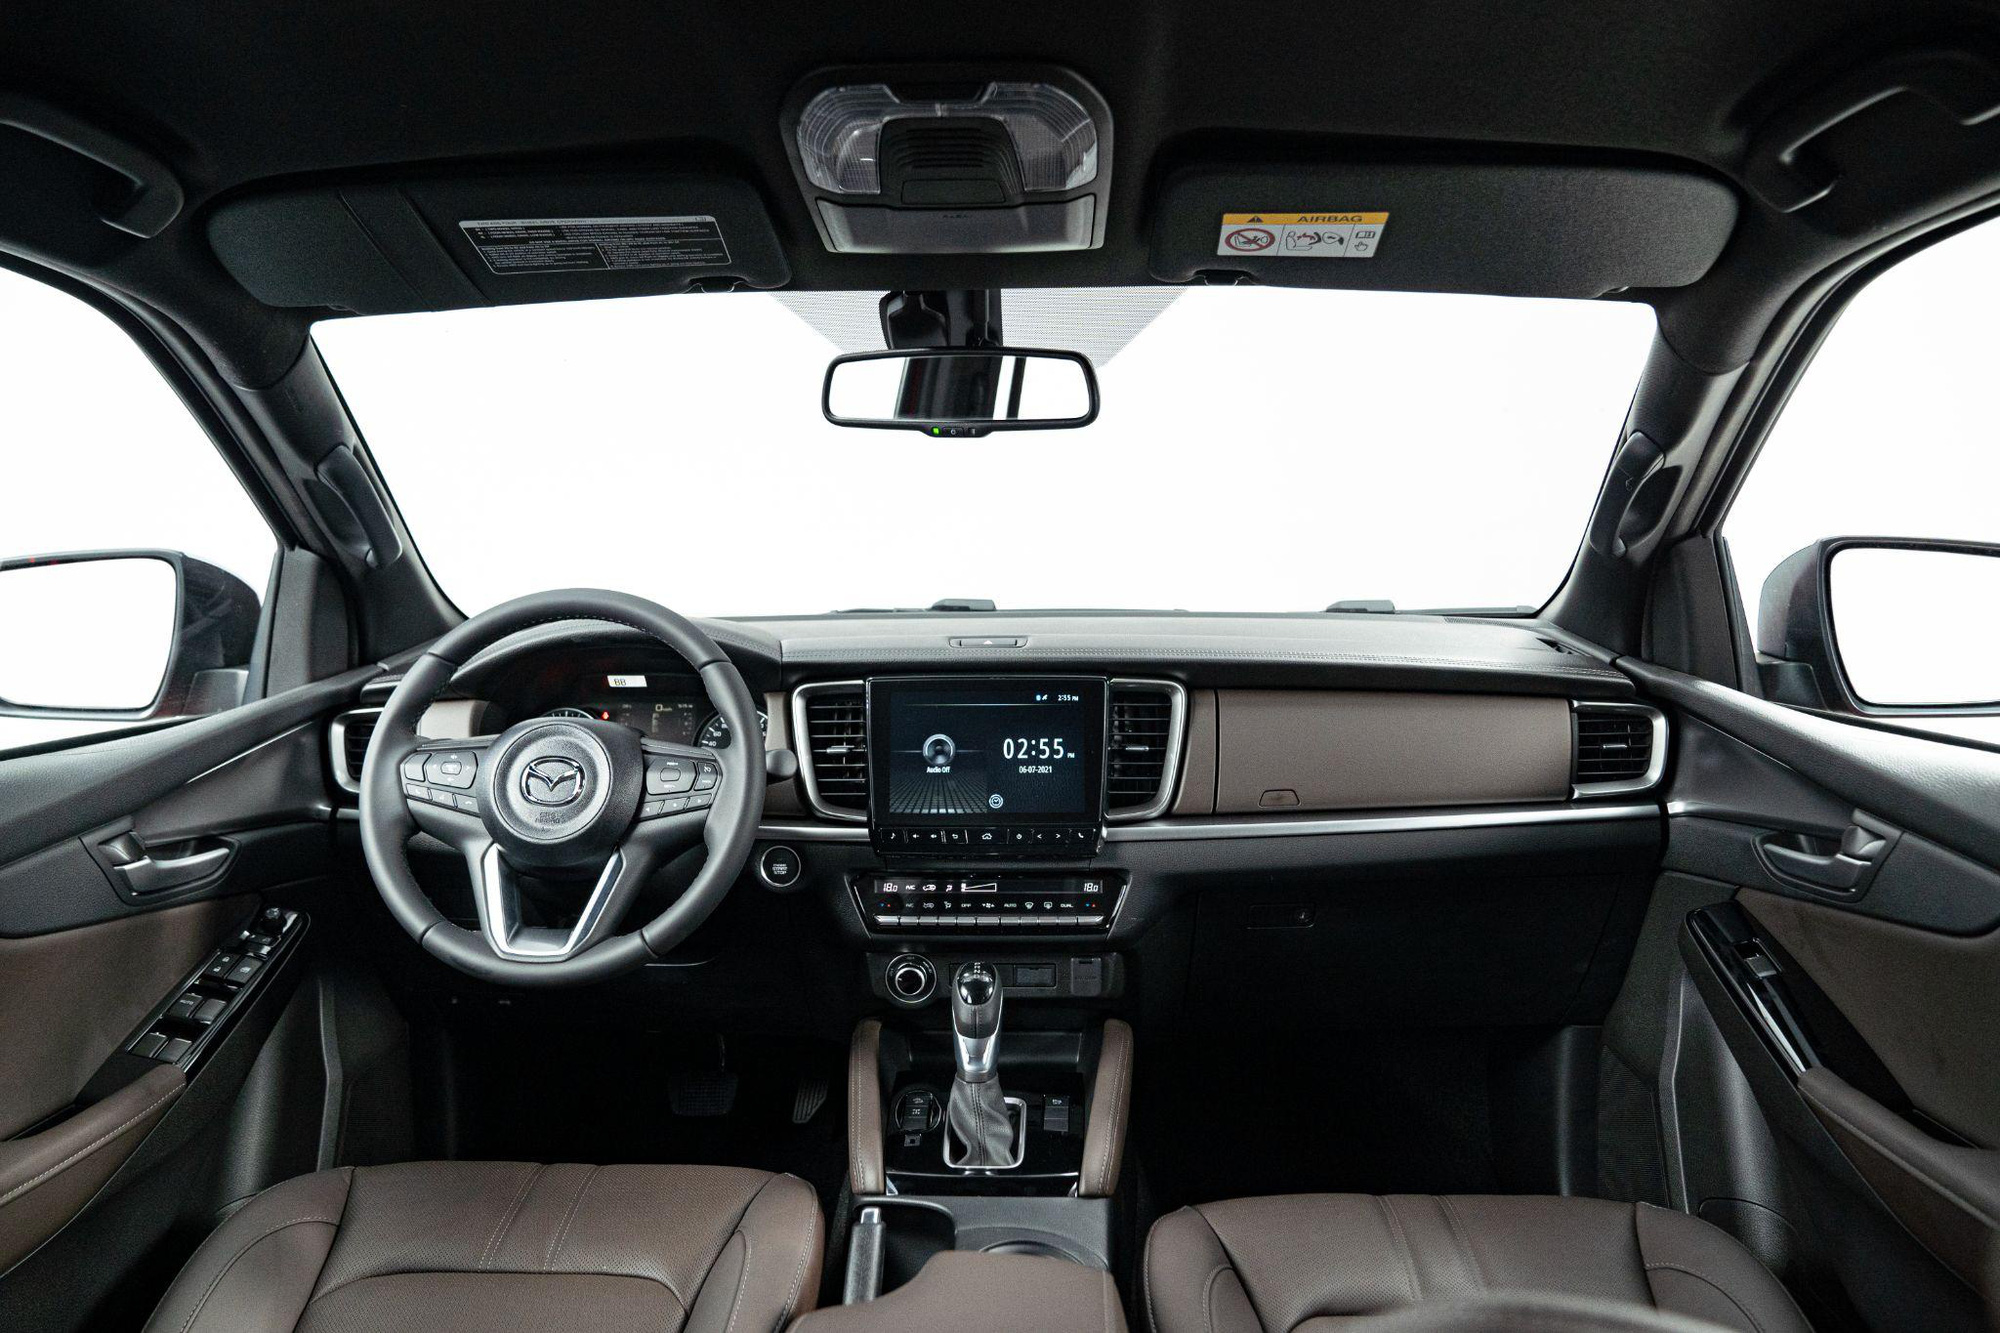 Mazda BT-50 2021 mang luồng gió mới cho phân khúc bán tải đô thị với tiện nghi như SUV cao cấp - Ảnh 3.